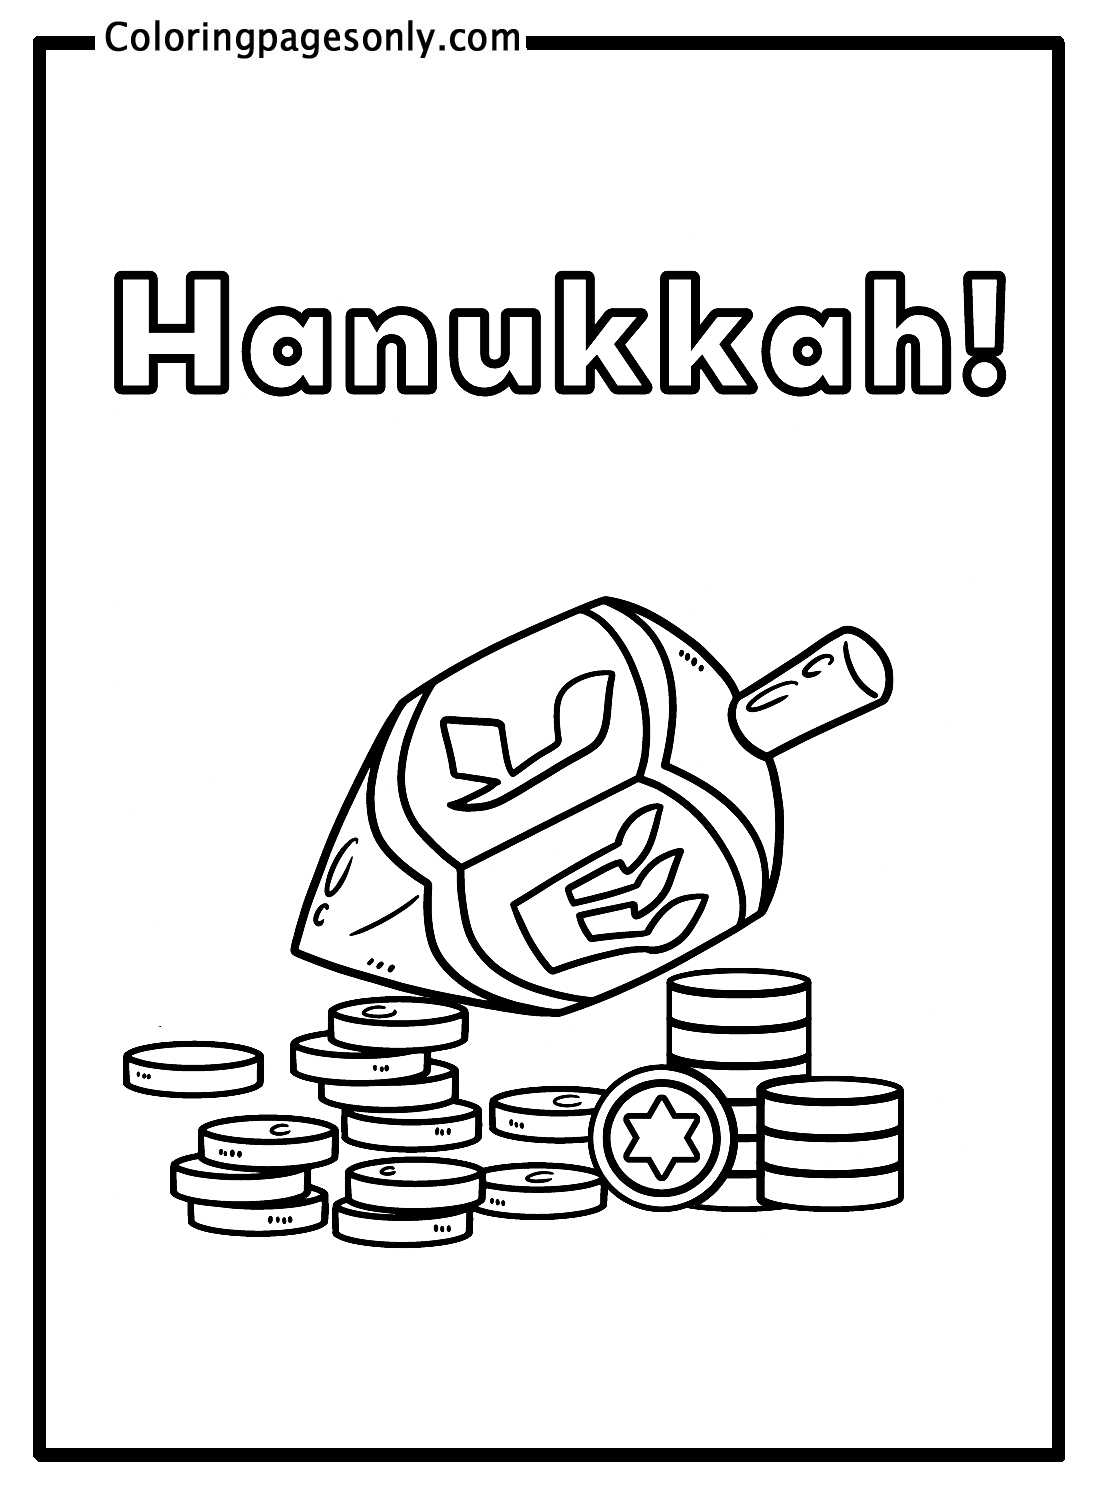 Hanukkah Dreidel And Coins Coloring Pages